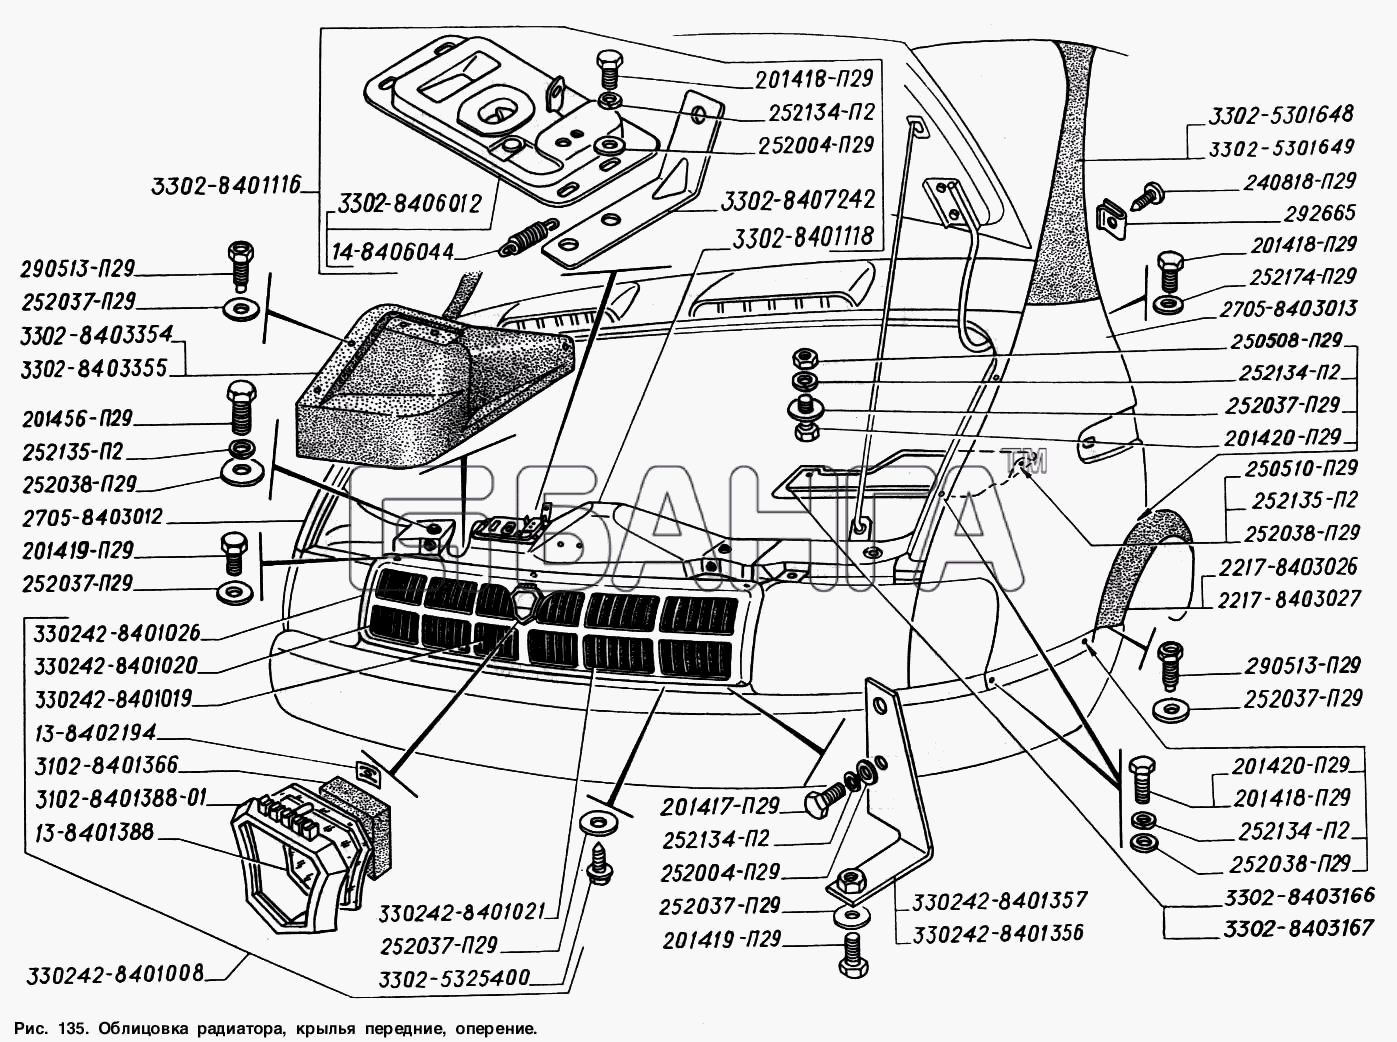 ГАЗ ГАЗ-2217 (Соболь) Схема Облицовка радиатора крылья передние